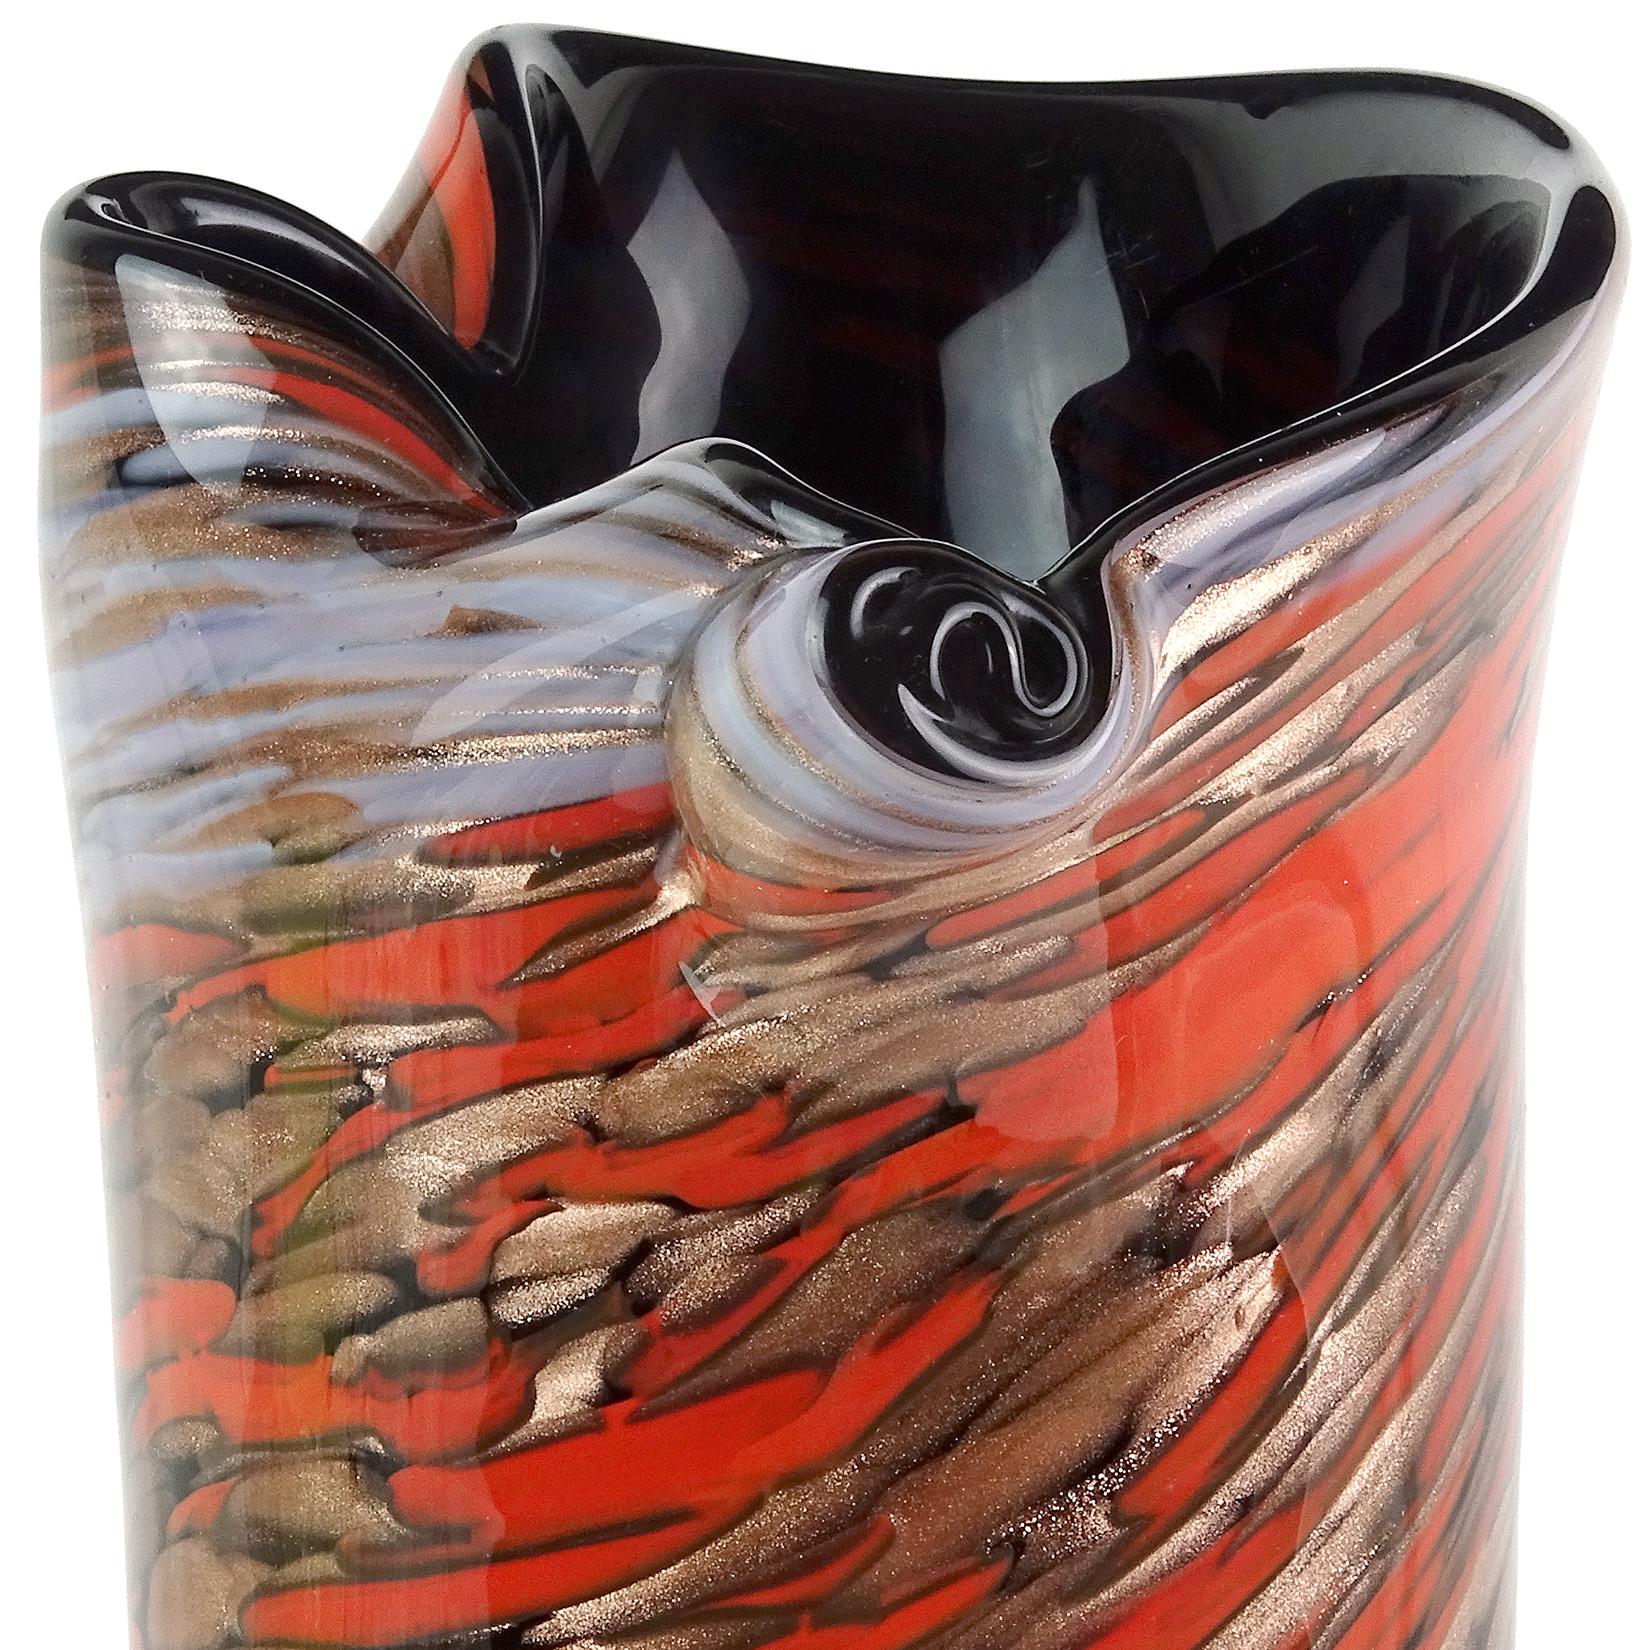 Magnifique vase en verre d'art italien soufflé à la main de Murano, rouge, bleu et mouchetures d'aventurine. Documenté à la société Fratelli Toso. La pièce a un bord pincé, avec une décoration en volutes. Profondément recouvert d'aventurine de